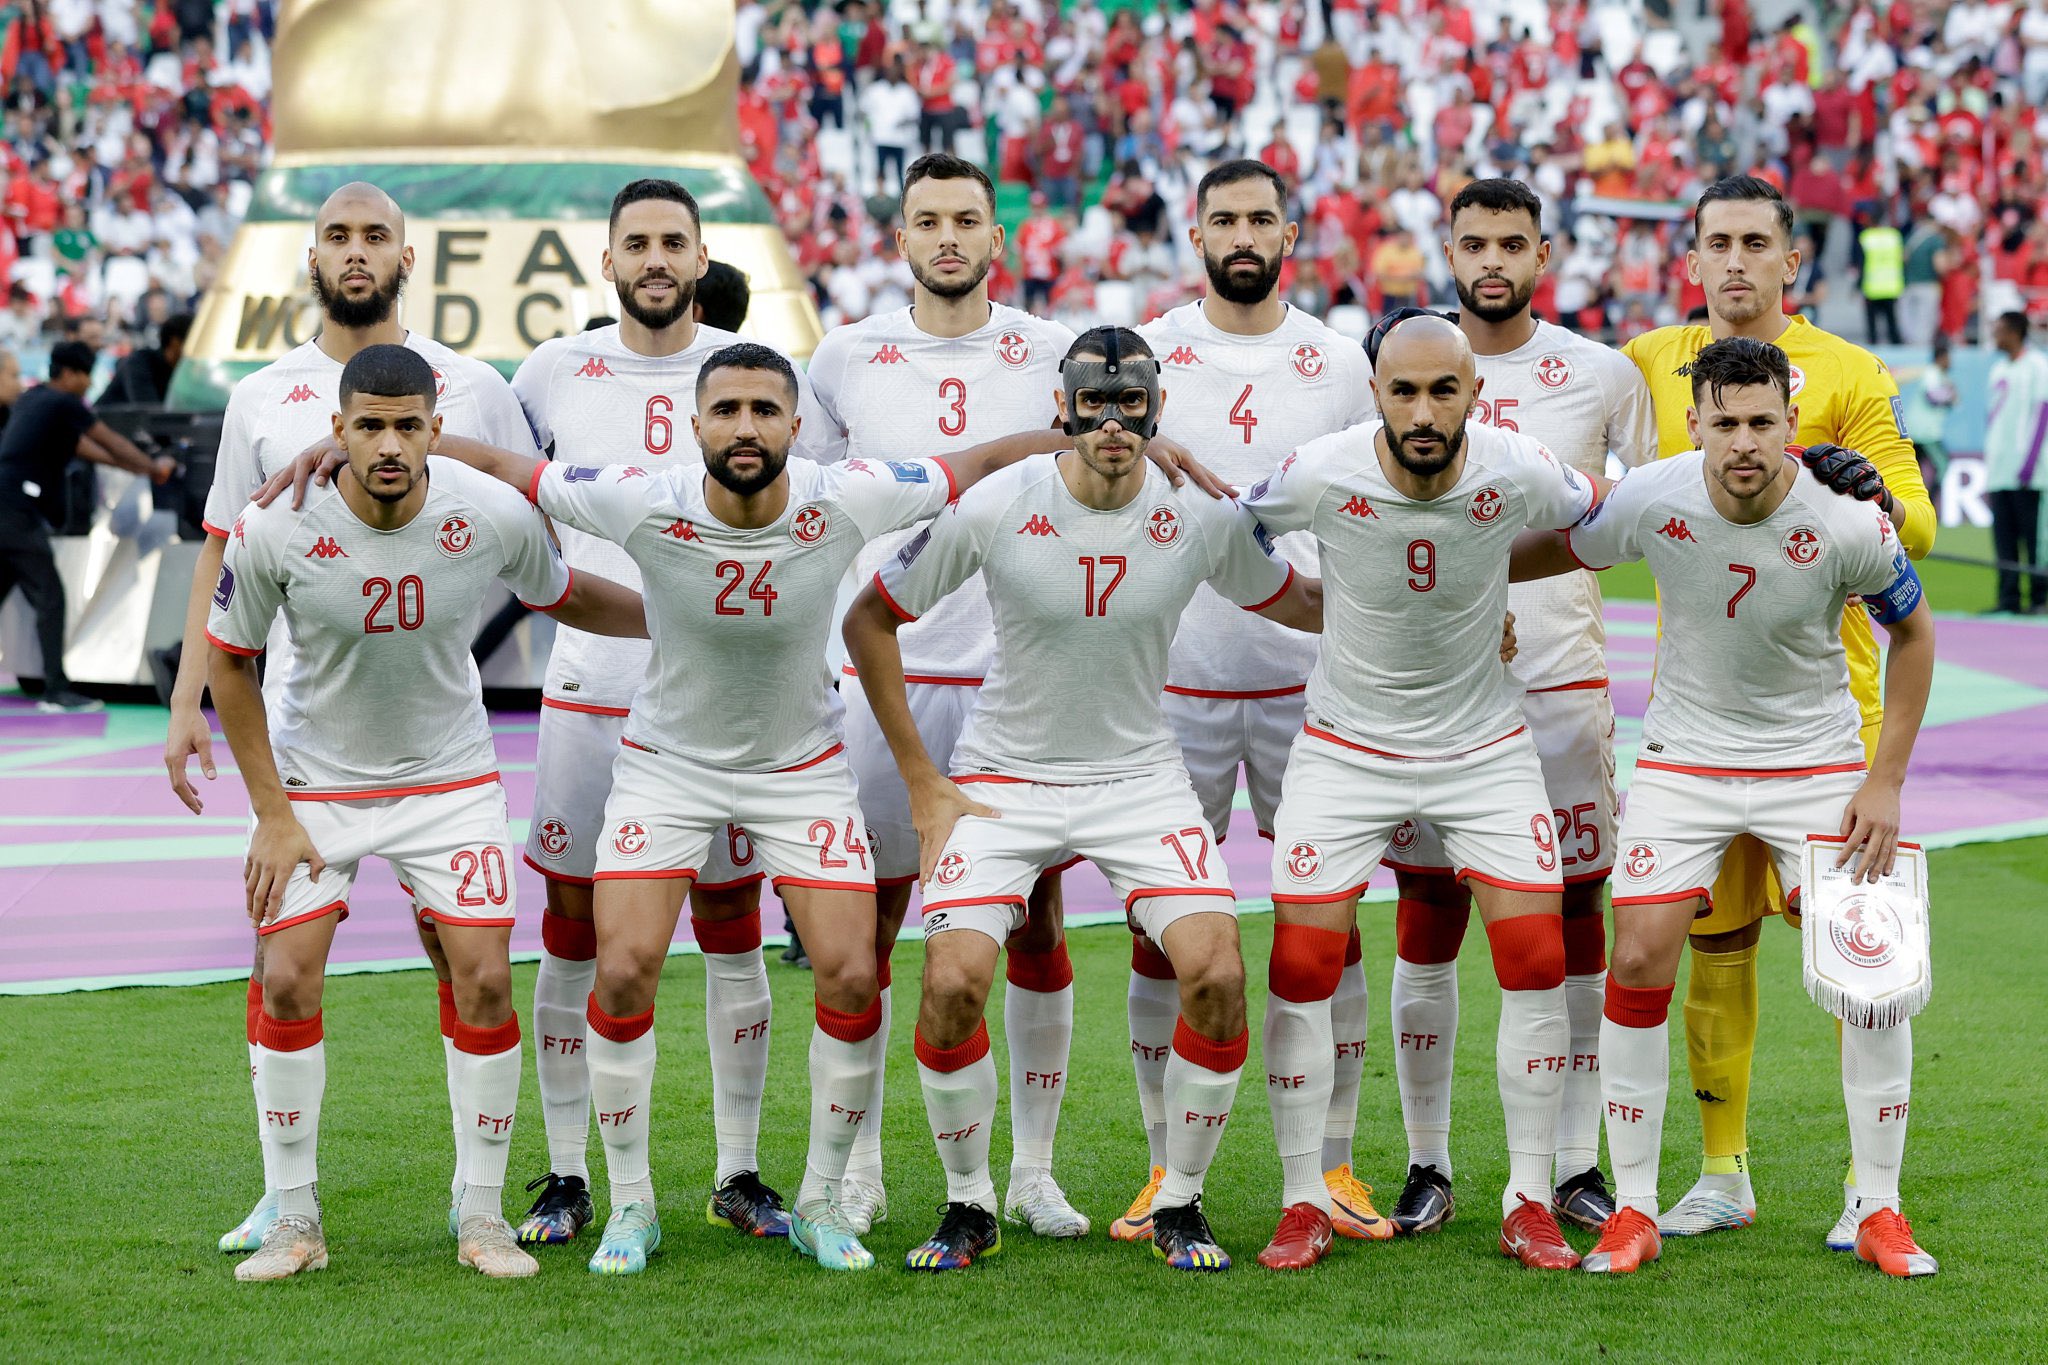 القنوات الناقلة المفتوحة لمباراة تونس وفرنسا في كأس العالم